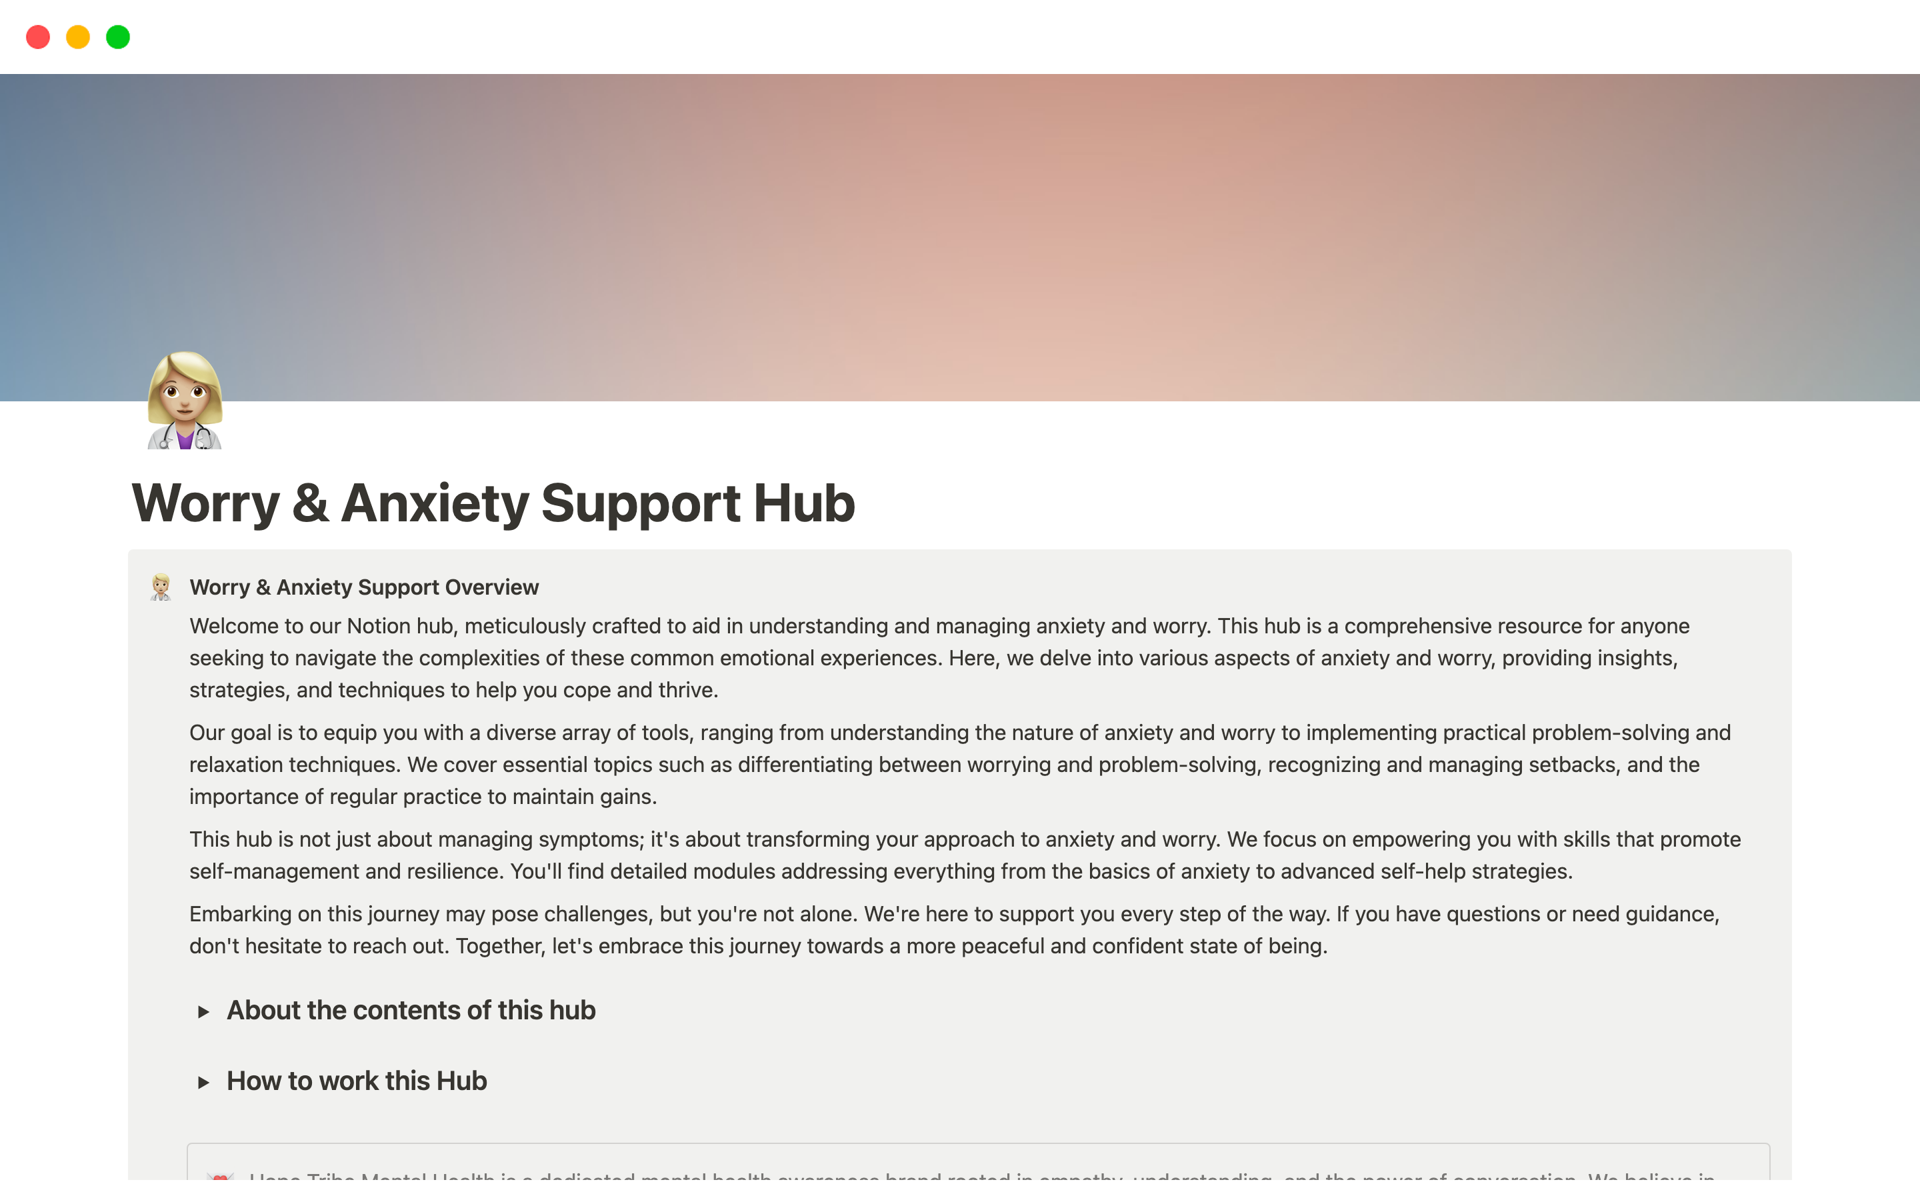 Vista previa de plantilla para Worry & Anxiety Support Hub